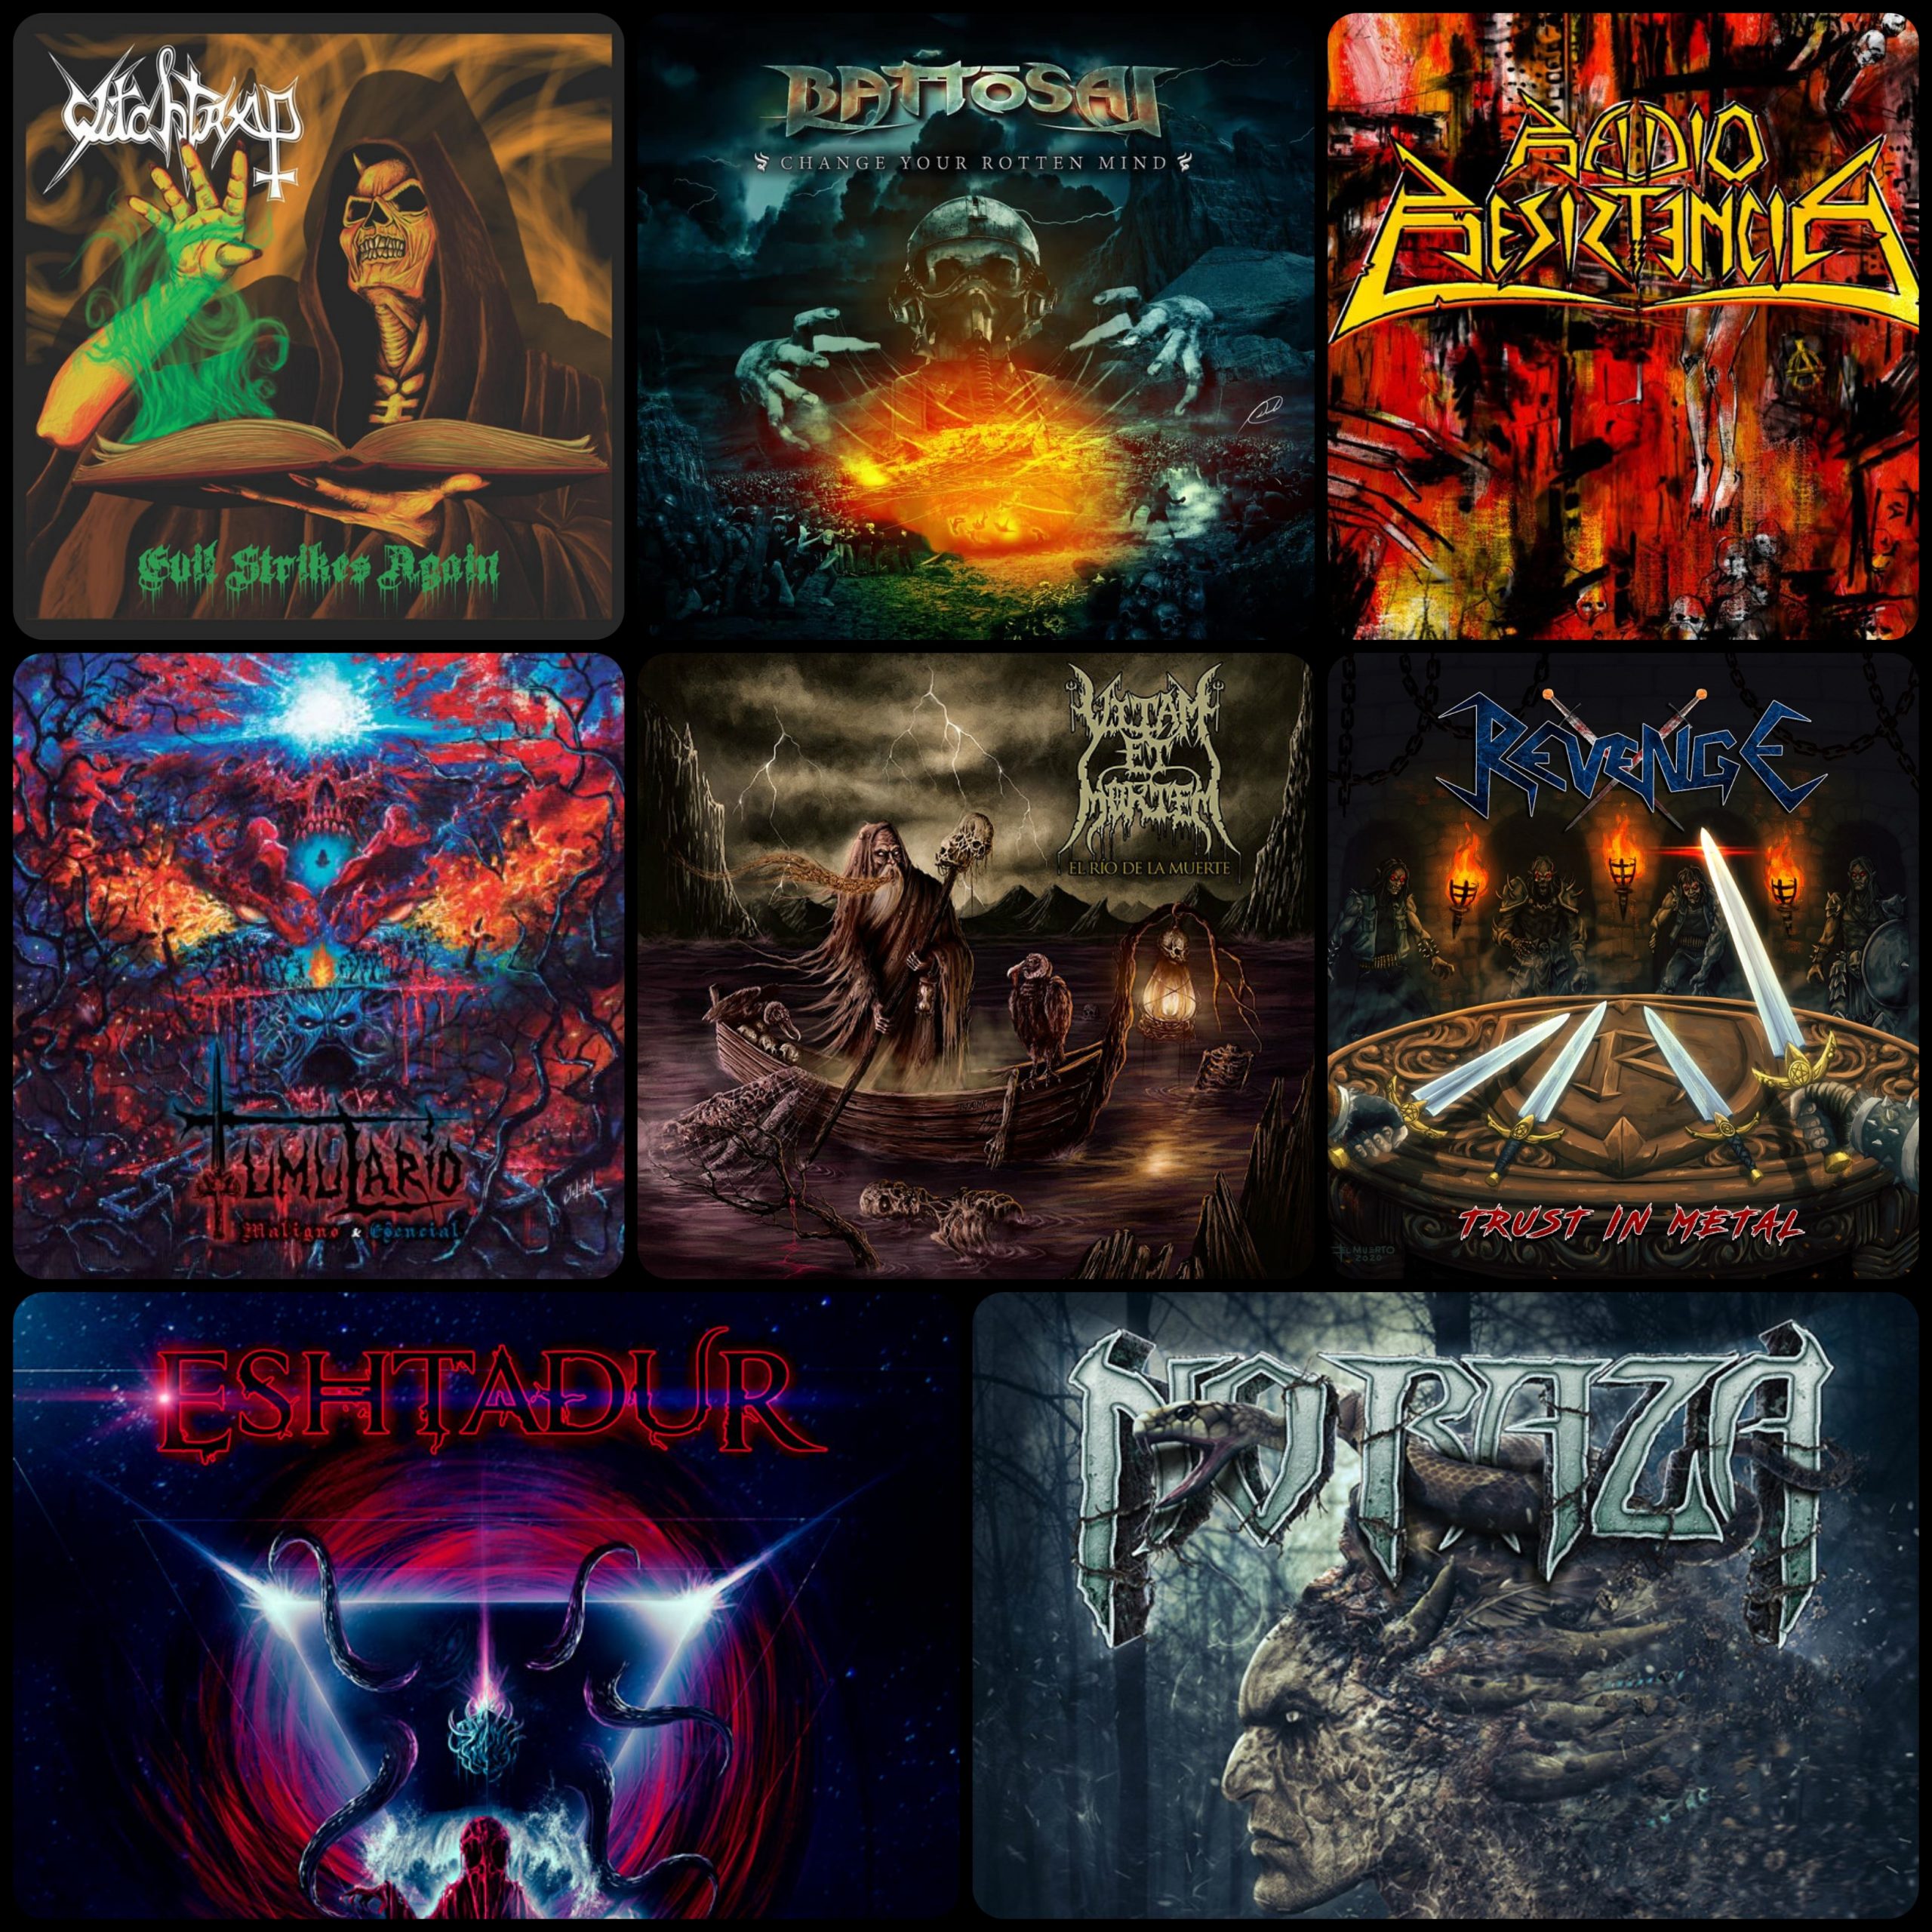 Las 5 mejores bandas de metal colombiano